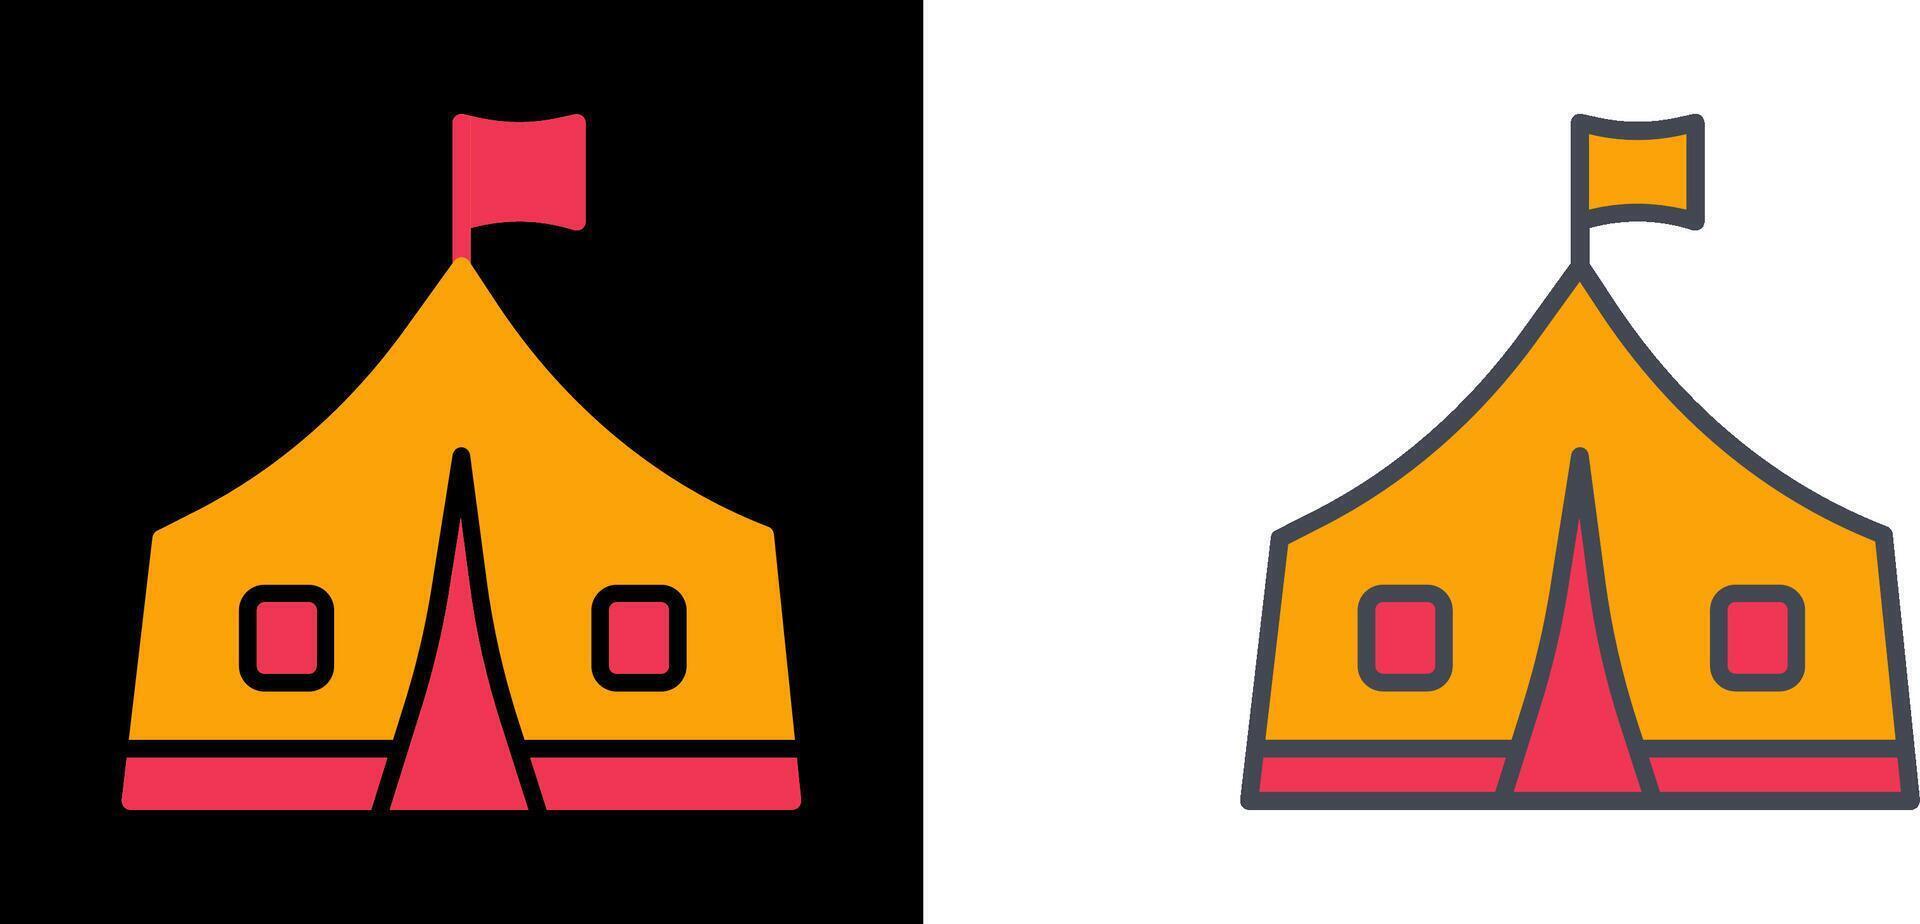 design de ícone de tenda vetor